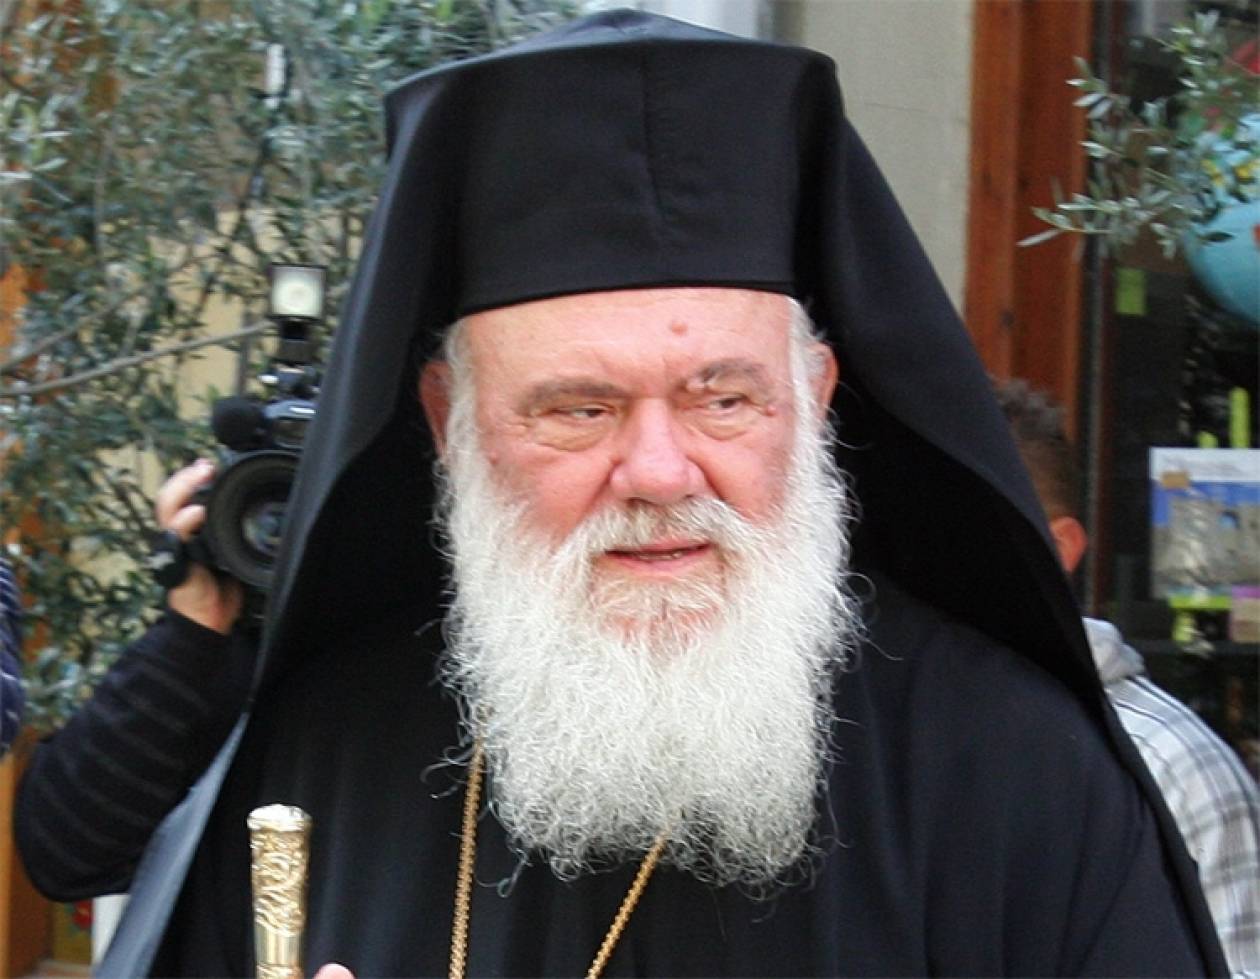 Ιωάννινα: Τοποτηρητής στη Μητρόπολη αναλαμβάνει ο αρχιεπίσκοπος